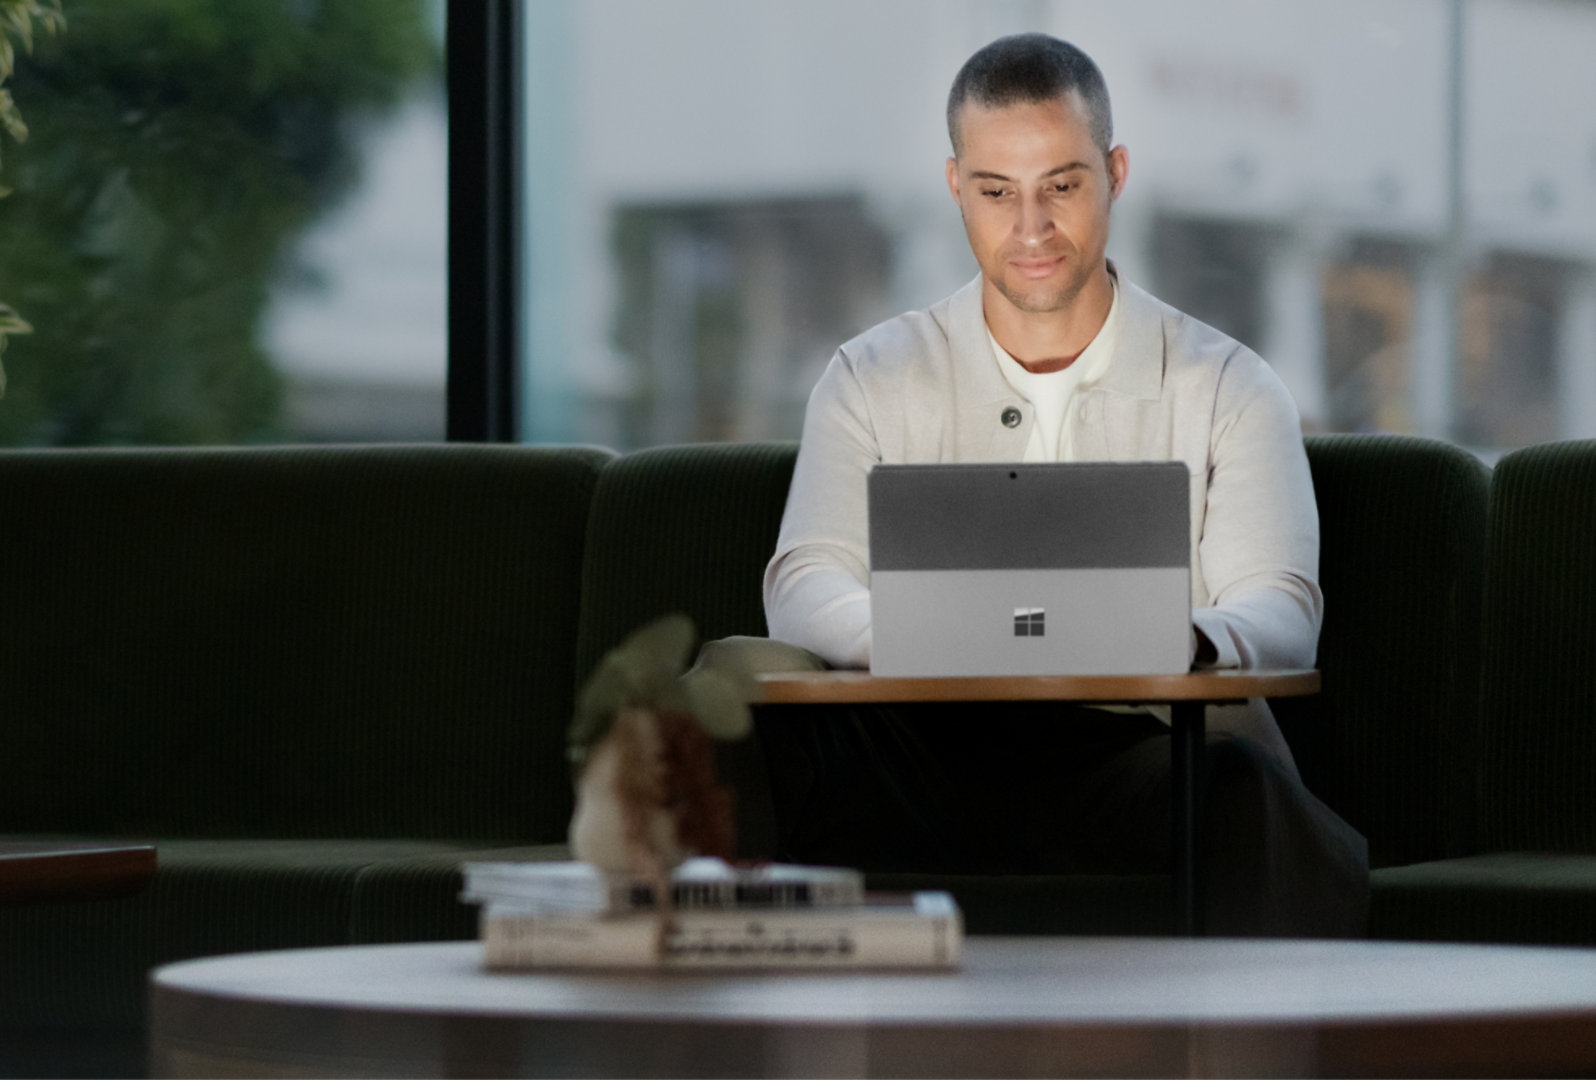 影像顯示男性在小桌子上工作，展示採用膝上型電腦模式的 Surface Pro 10